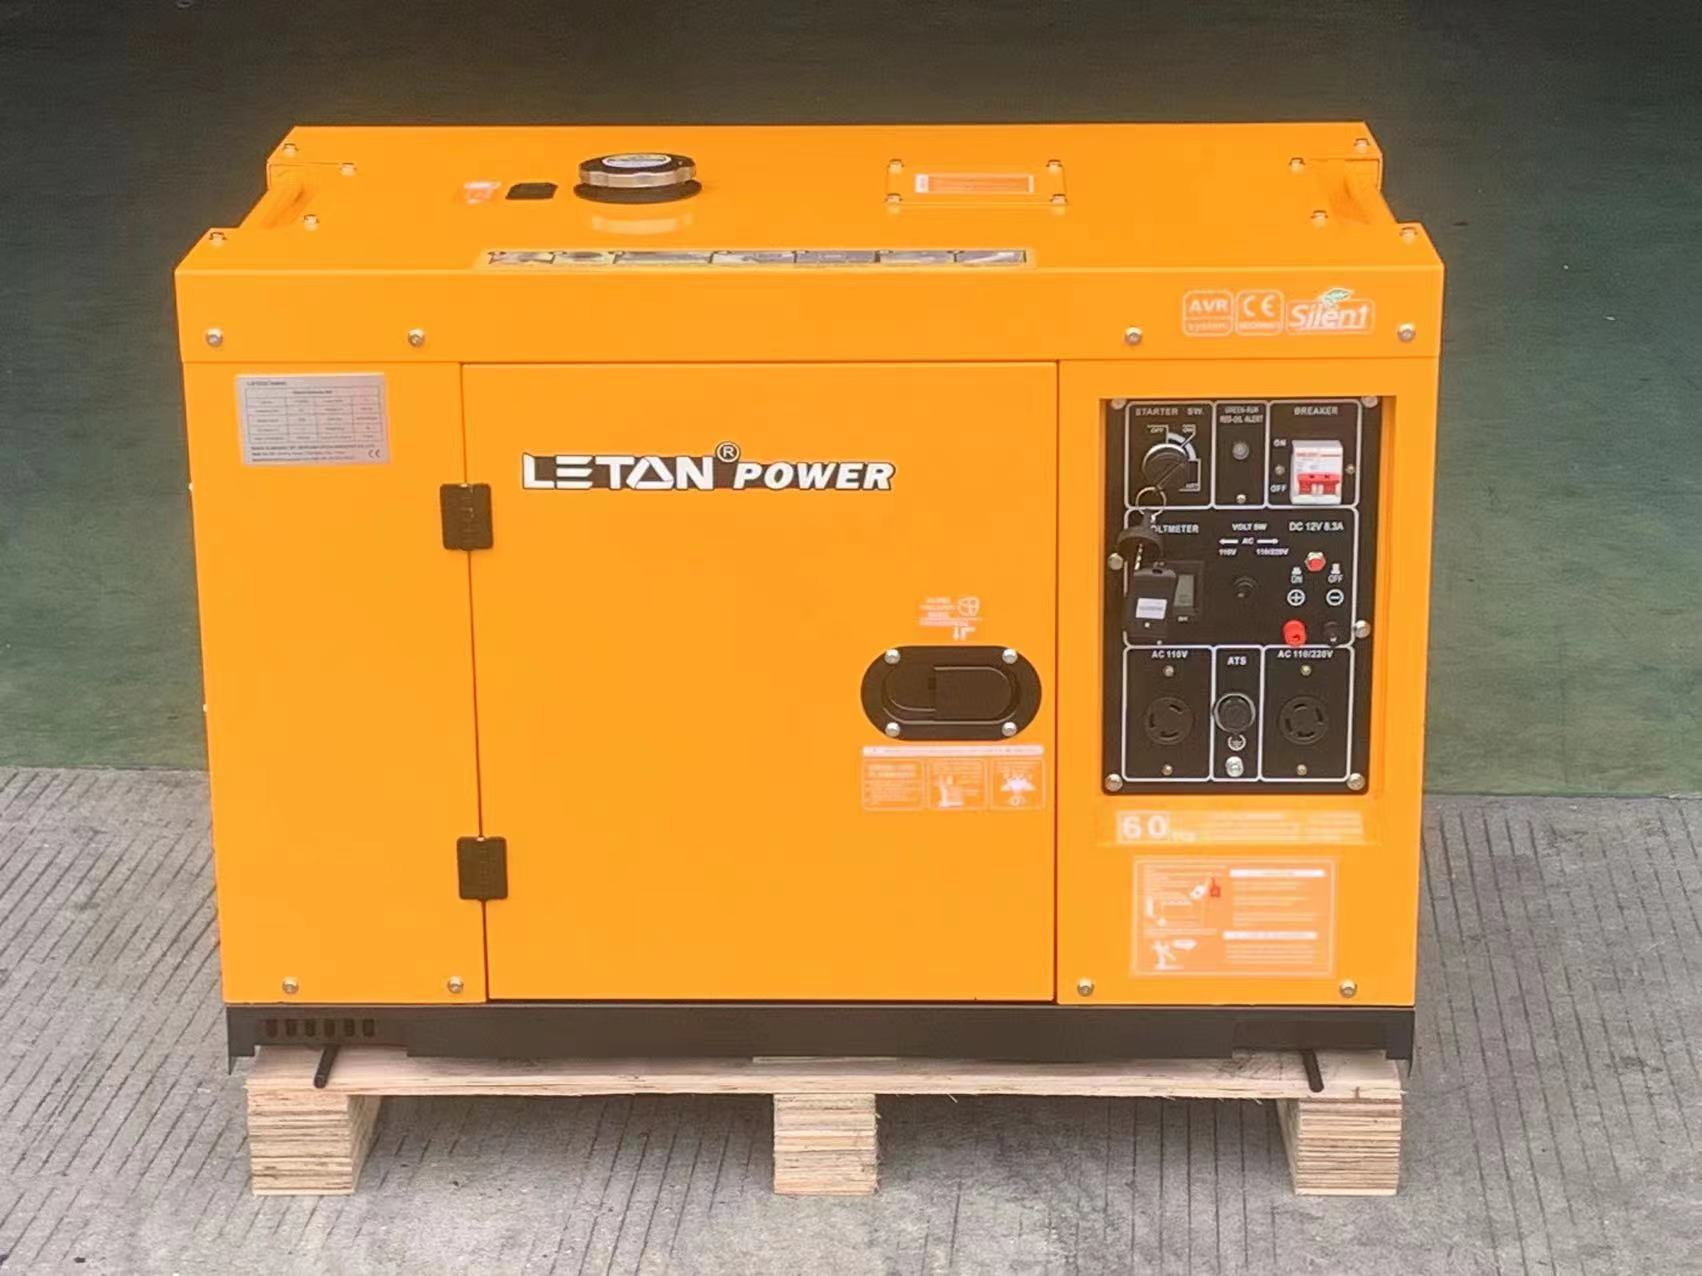 LT1200W супер чимээгүй дизель генератор Летон цахилгаан үүсгүүрийн үнэ